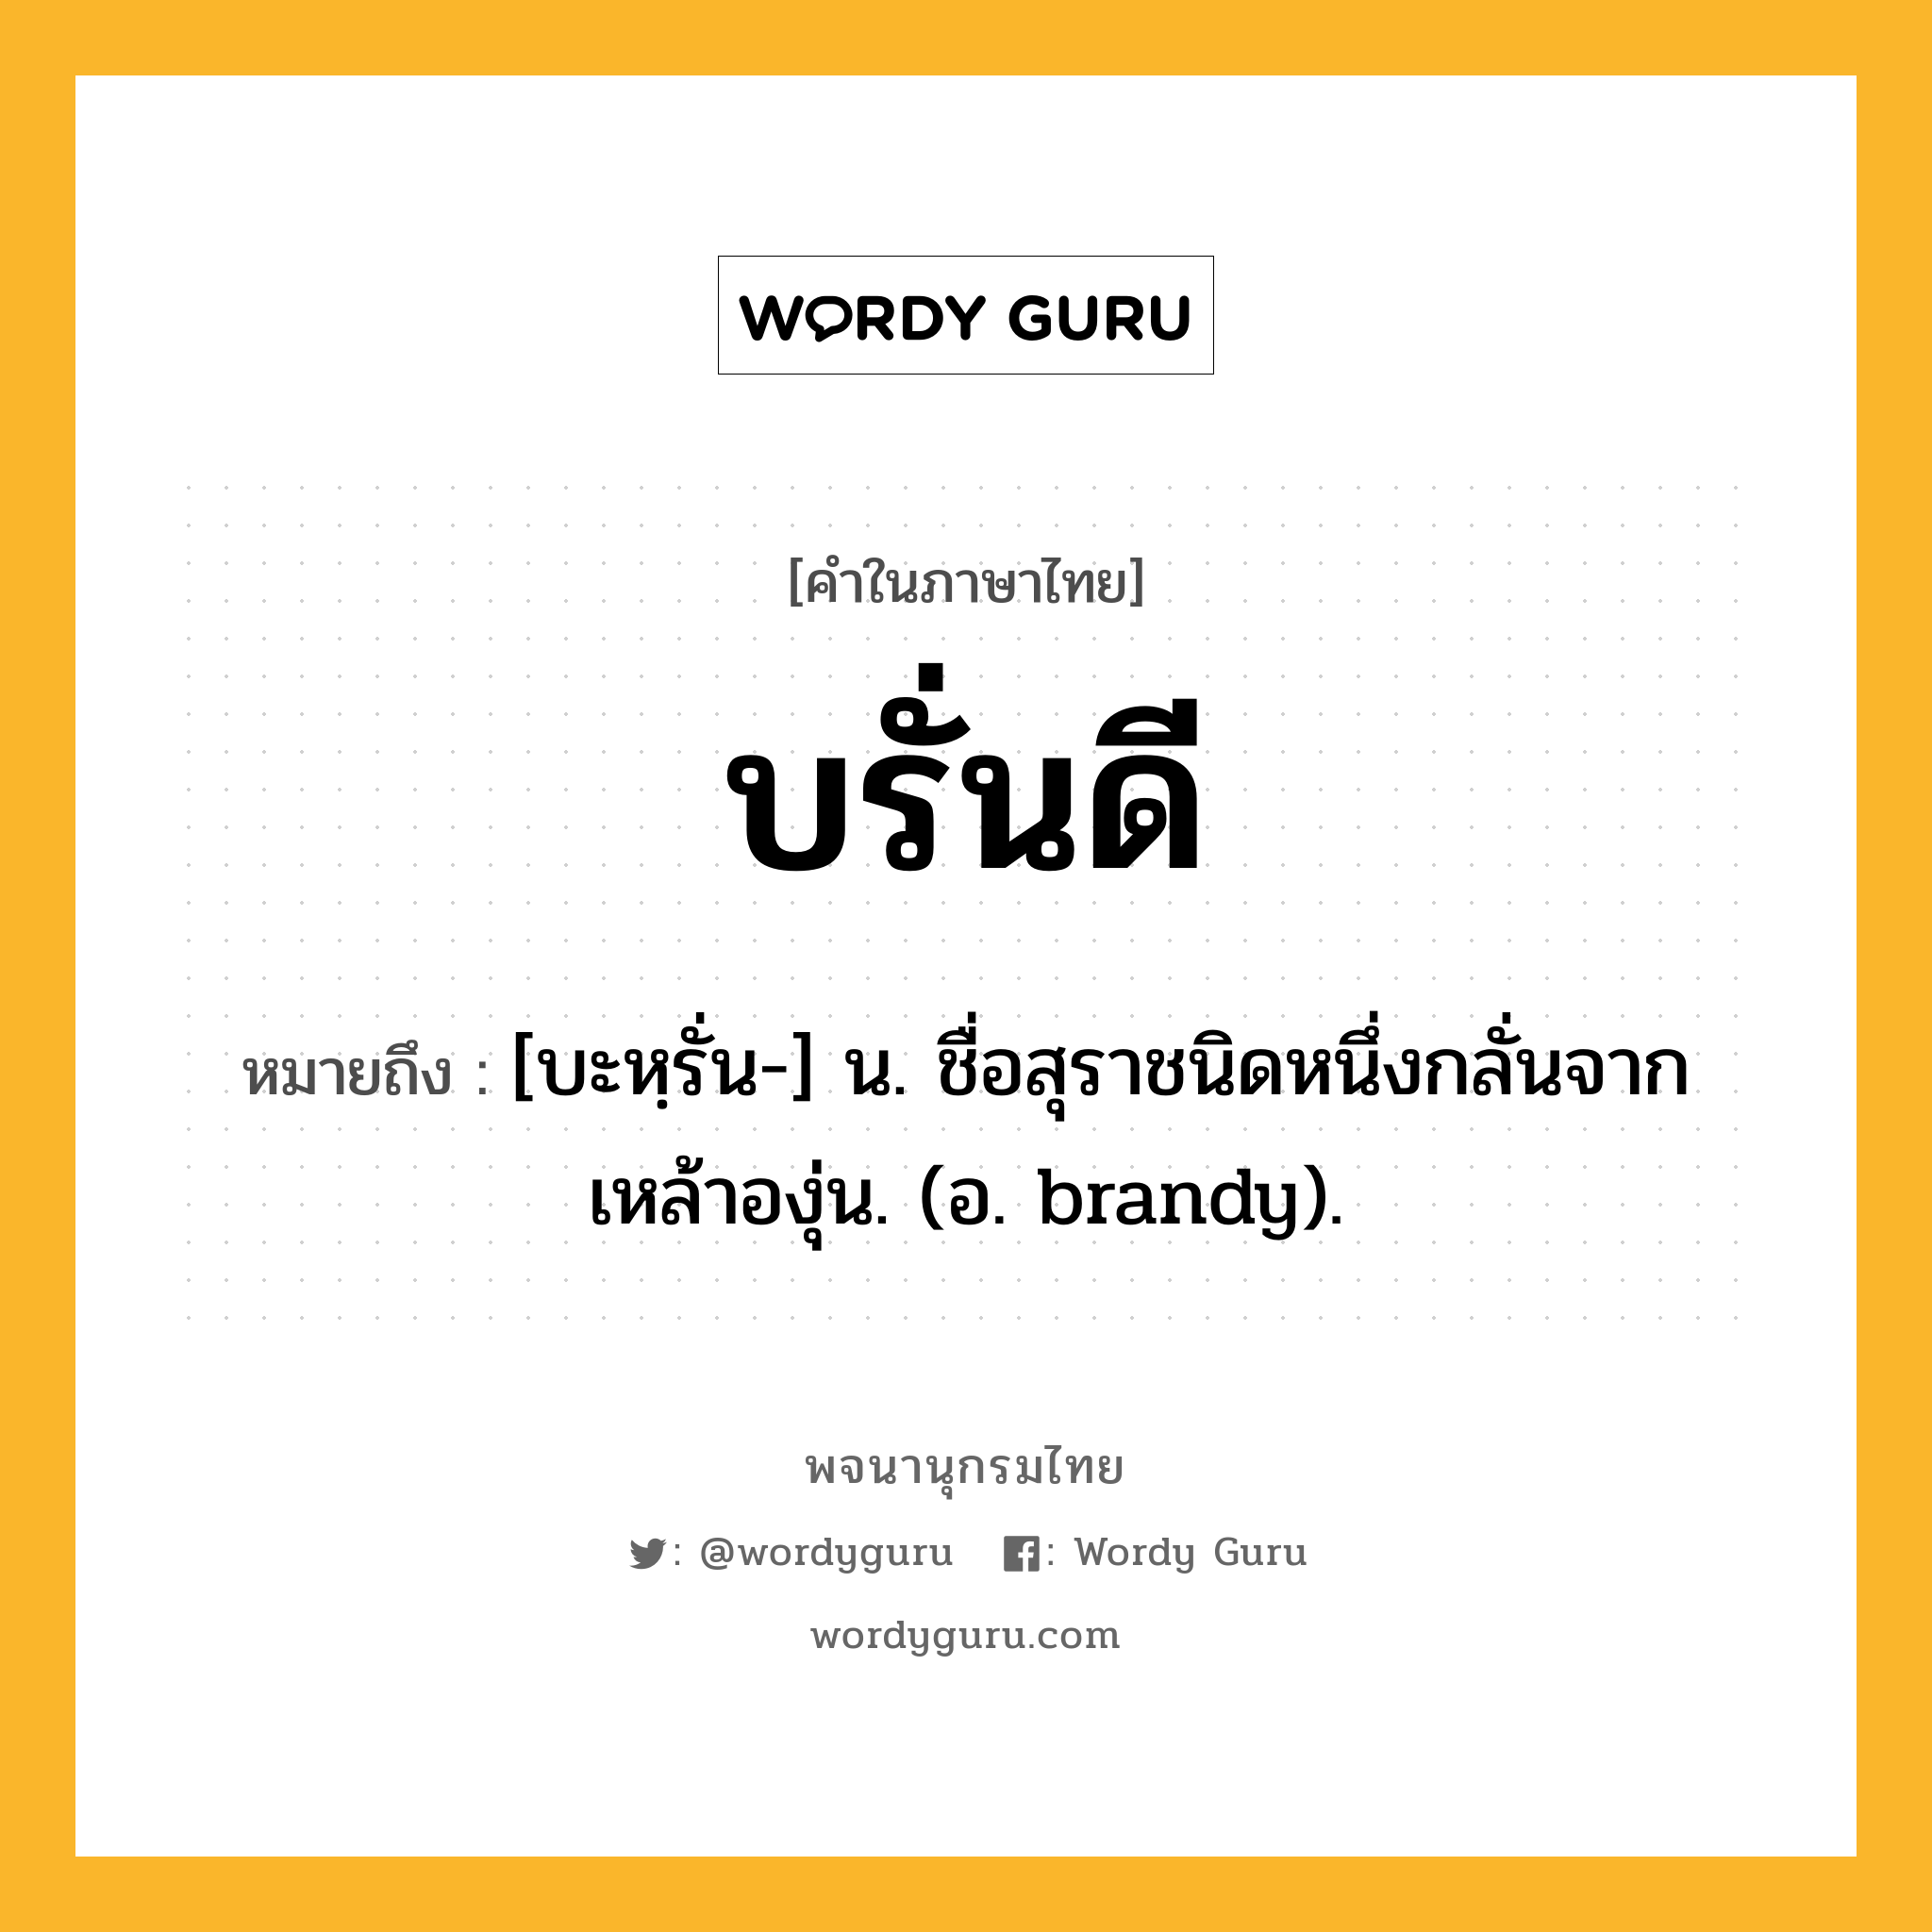 บรั่นดี หมายถึงอะไร?, คำในภาษาไทย บรั่นดี หมายถึง [บะหฺรั่น-] น. ชื่อสุราชนิดหนึ่งกลั่นจากเหล้าองุ่น. (อ. brandy).